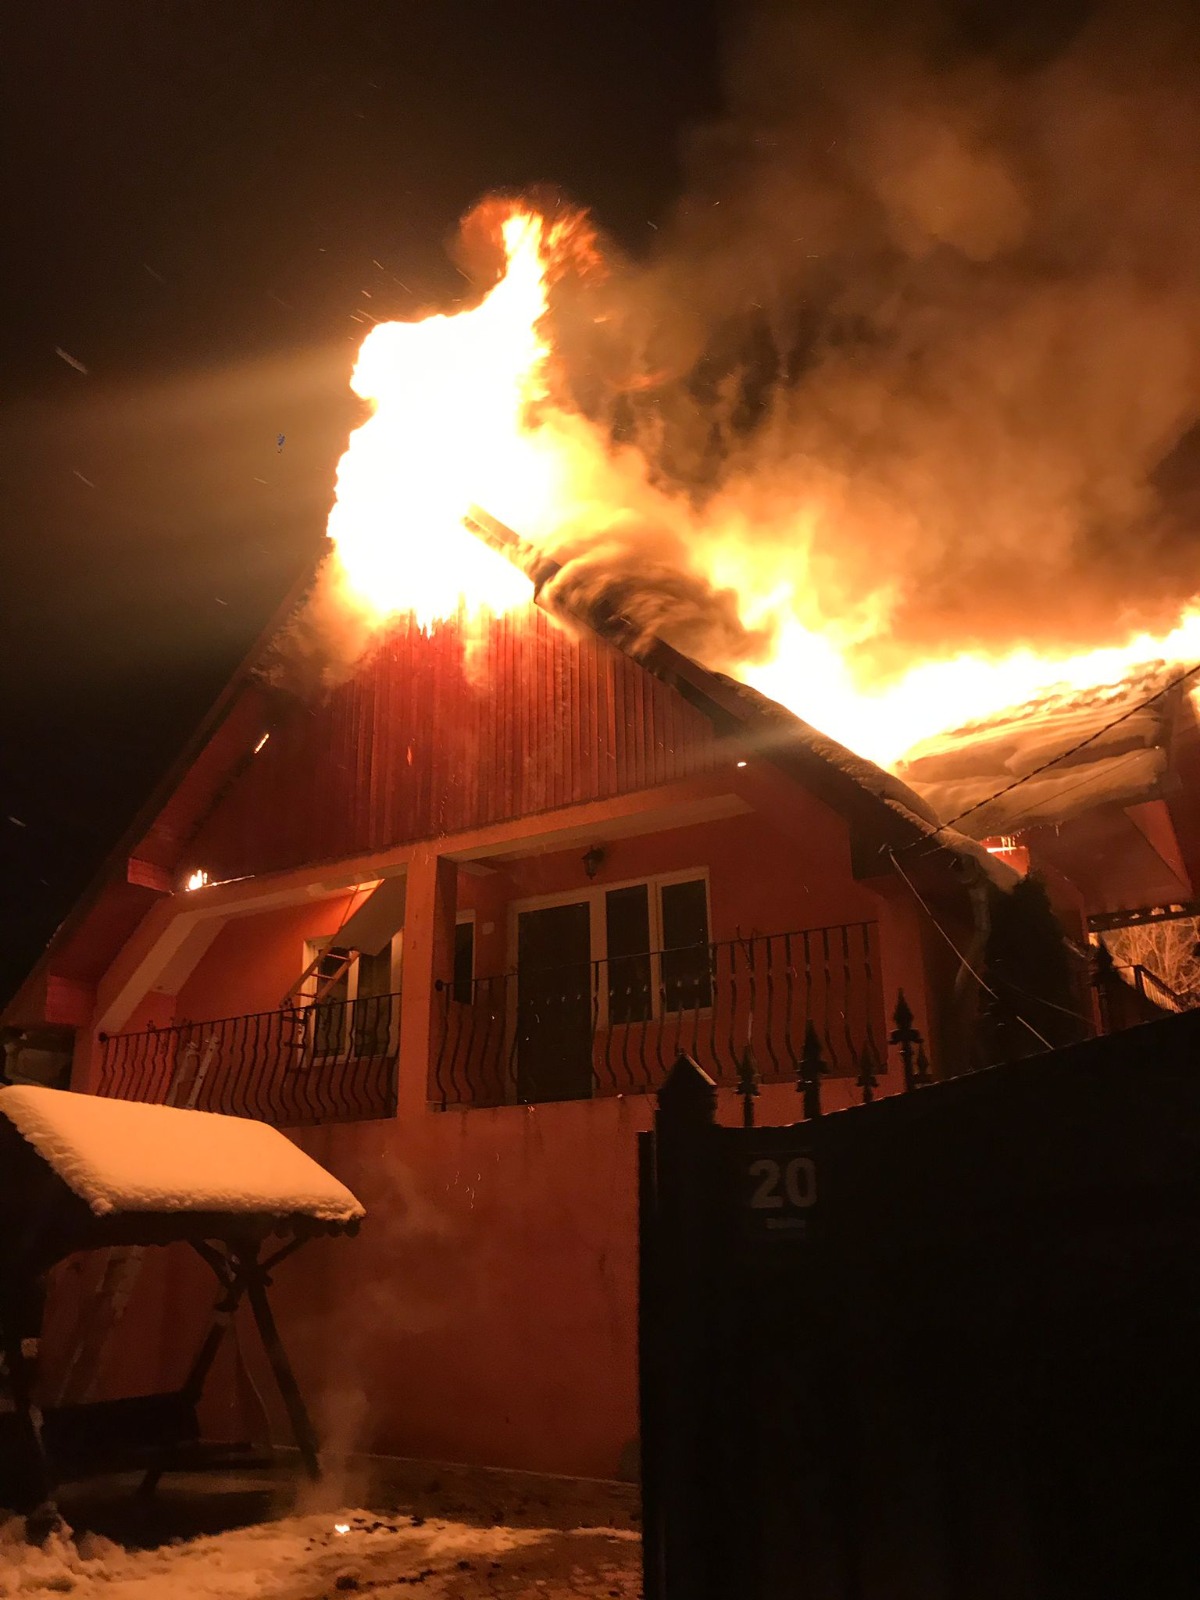 FOTO: Incendii violente în Aleșd și Băița. O întreagă casă a fost cuprinsă de flăcări, 05.02.2023